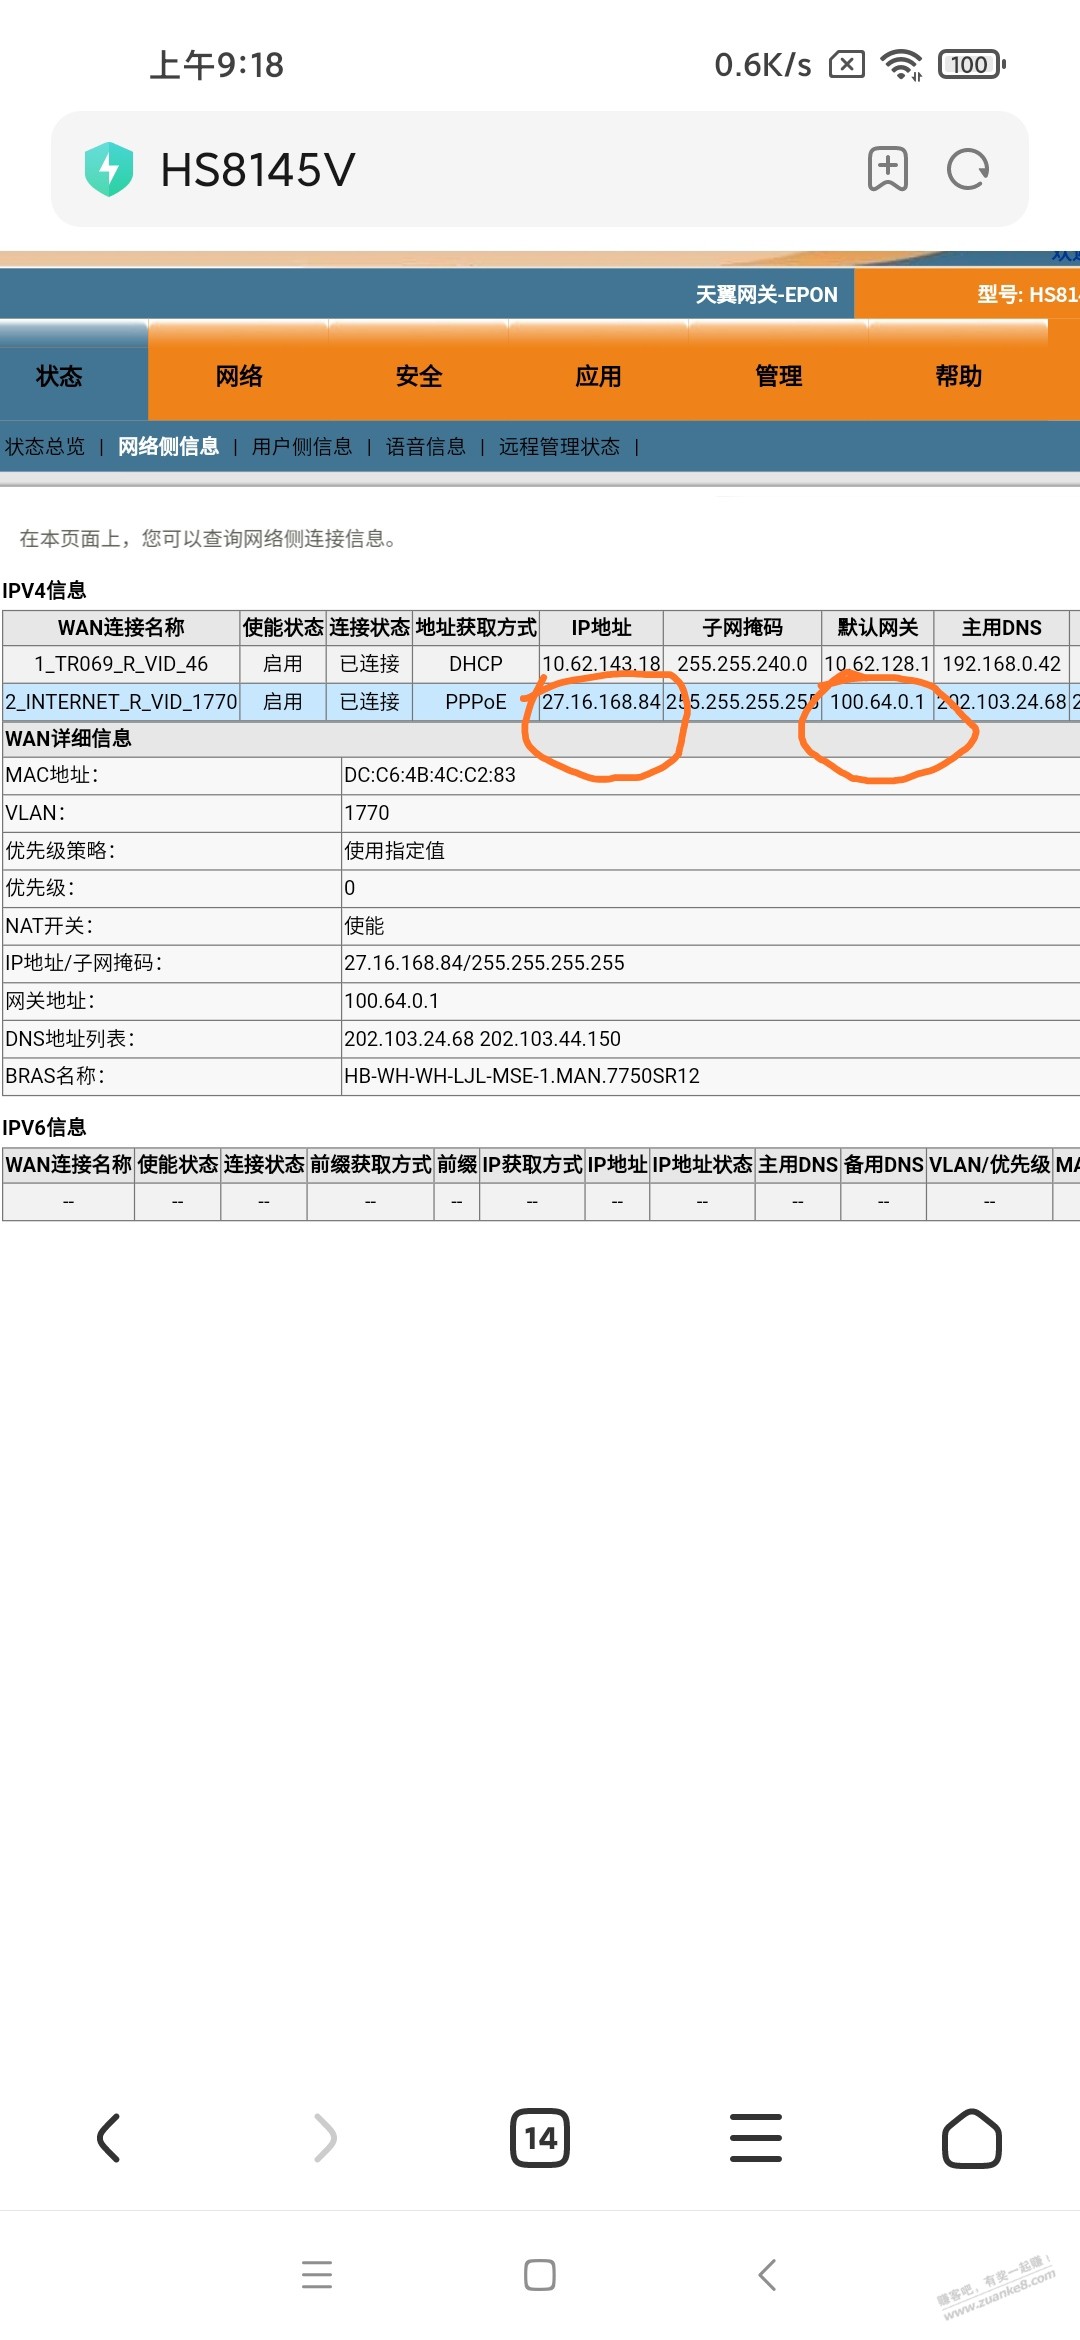 大家看看武汉电信的公网IP是不是假公网ip